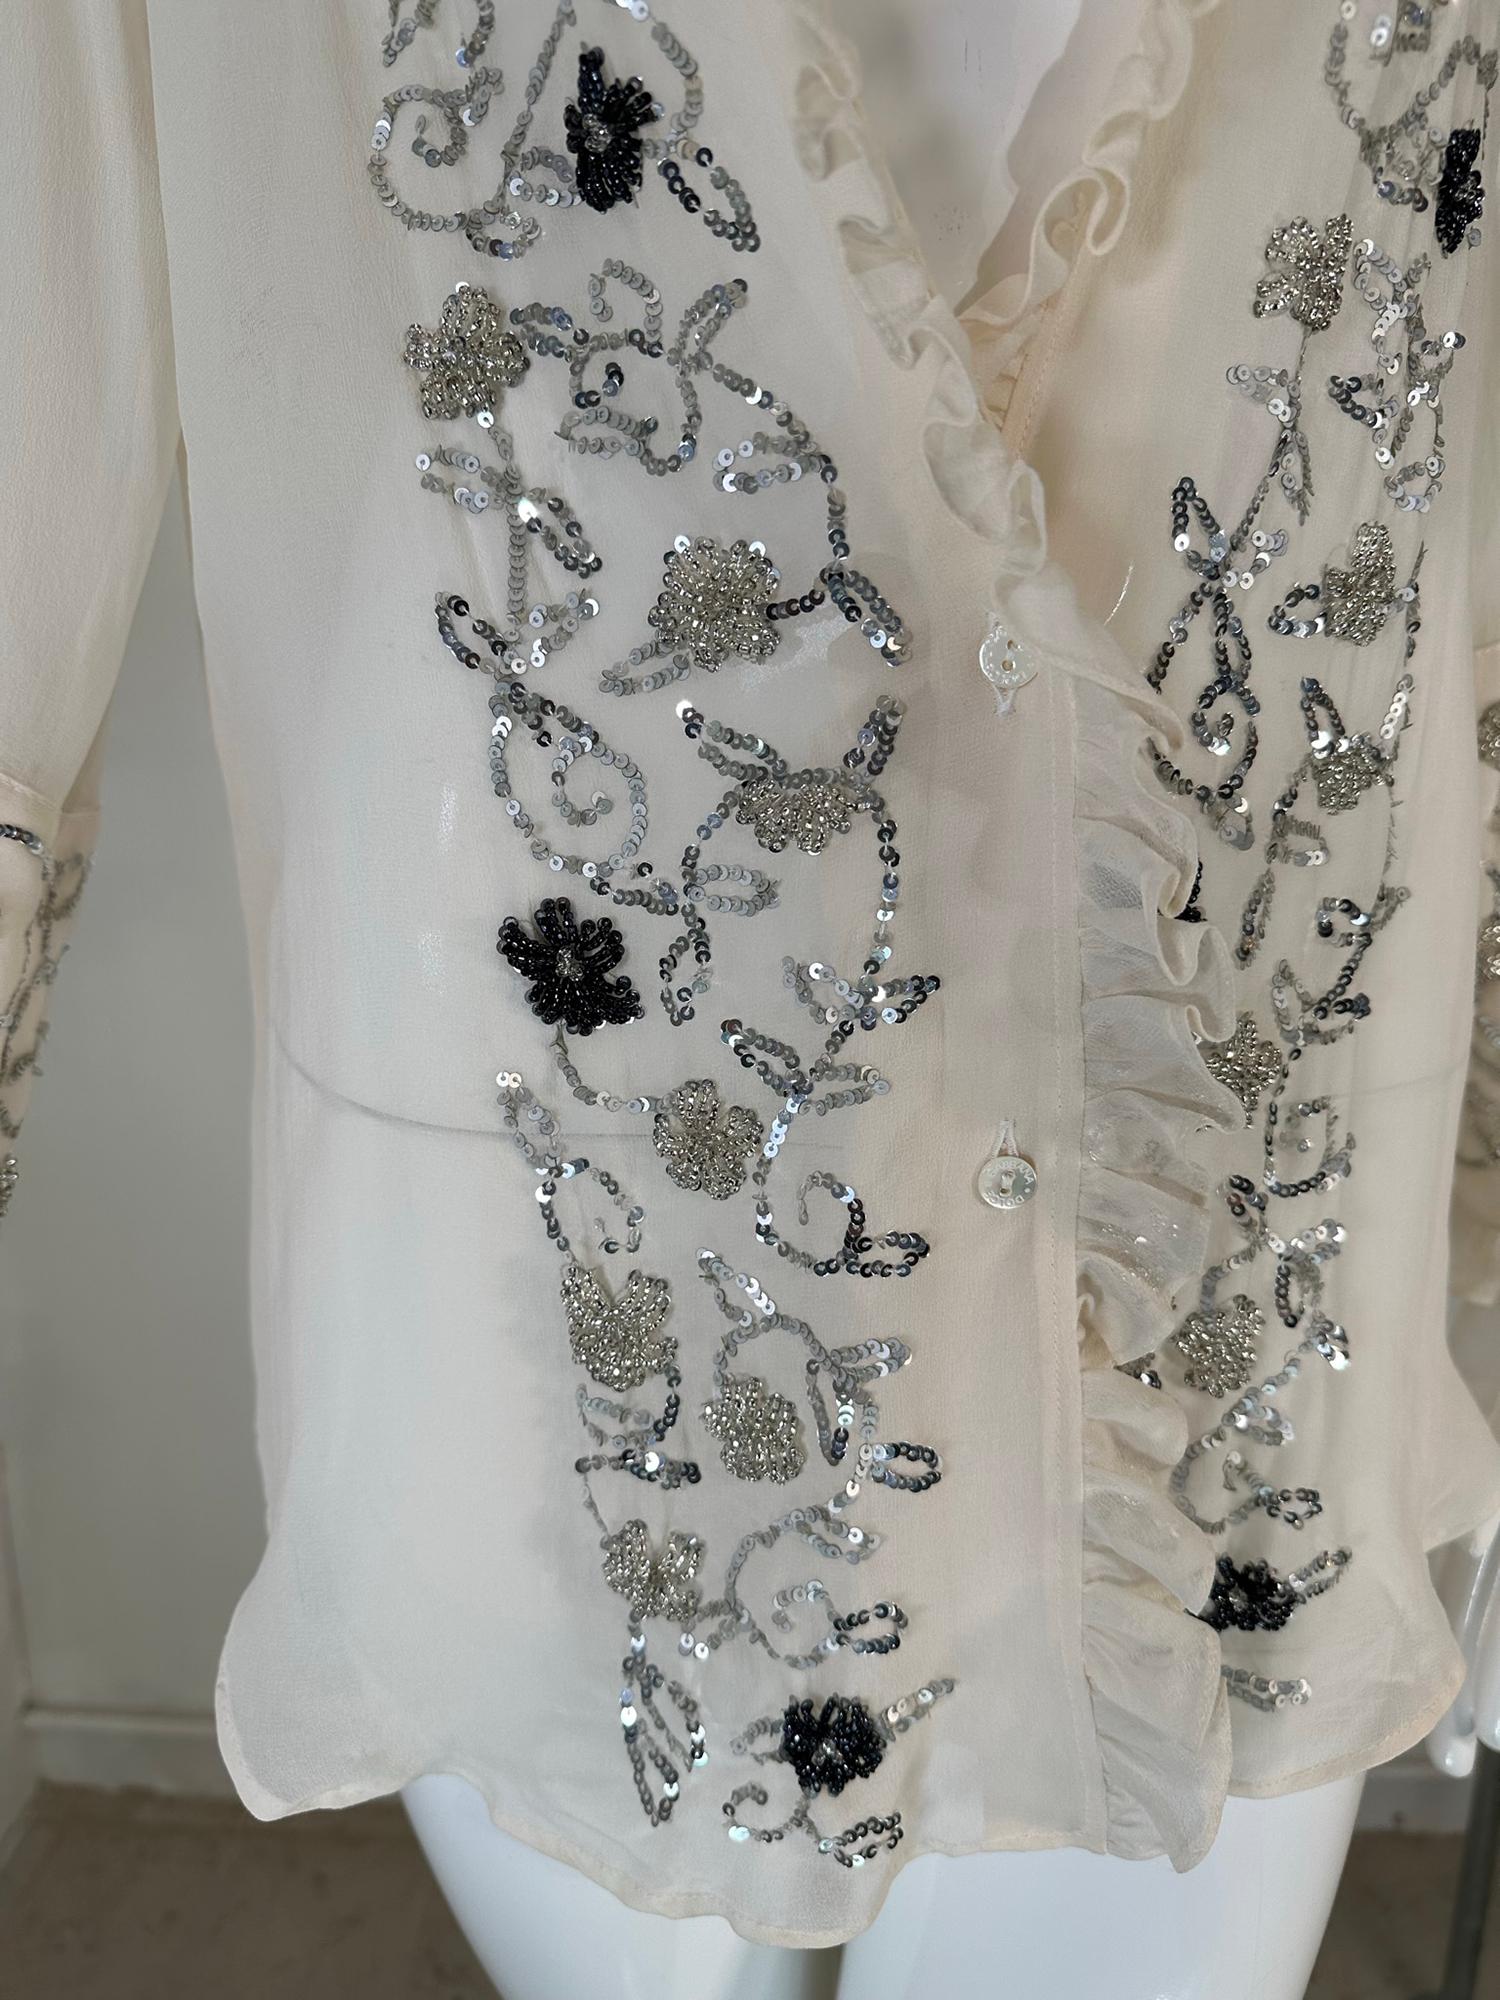 Dolce & Gabbana - Chemisier à col plongeant en mousseline de soie transparente blanc cassé avec paillettes 44. Chemisier en mousseline de soie transparente à encolure plongeante soulignée de volants étroits et d'un collier à oreilles. Les manches